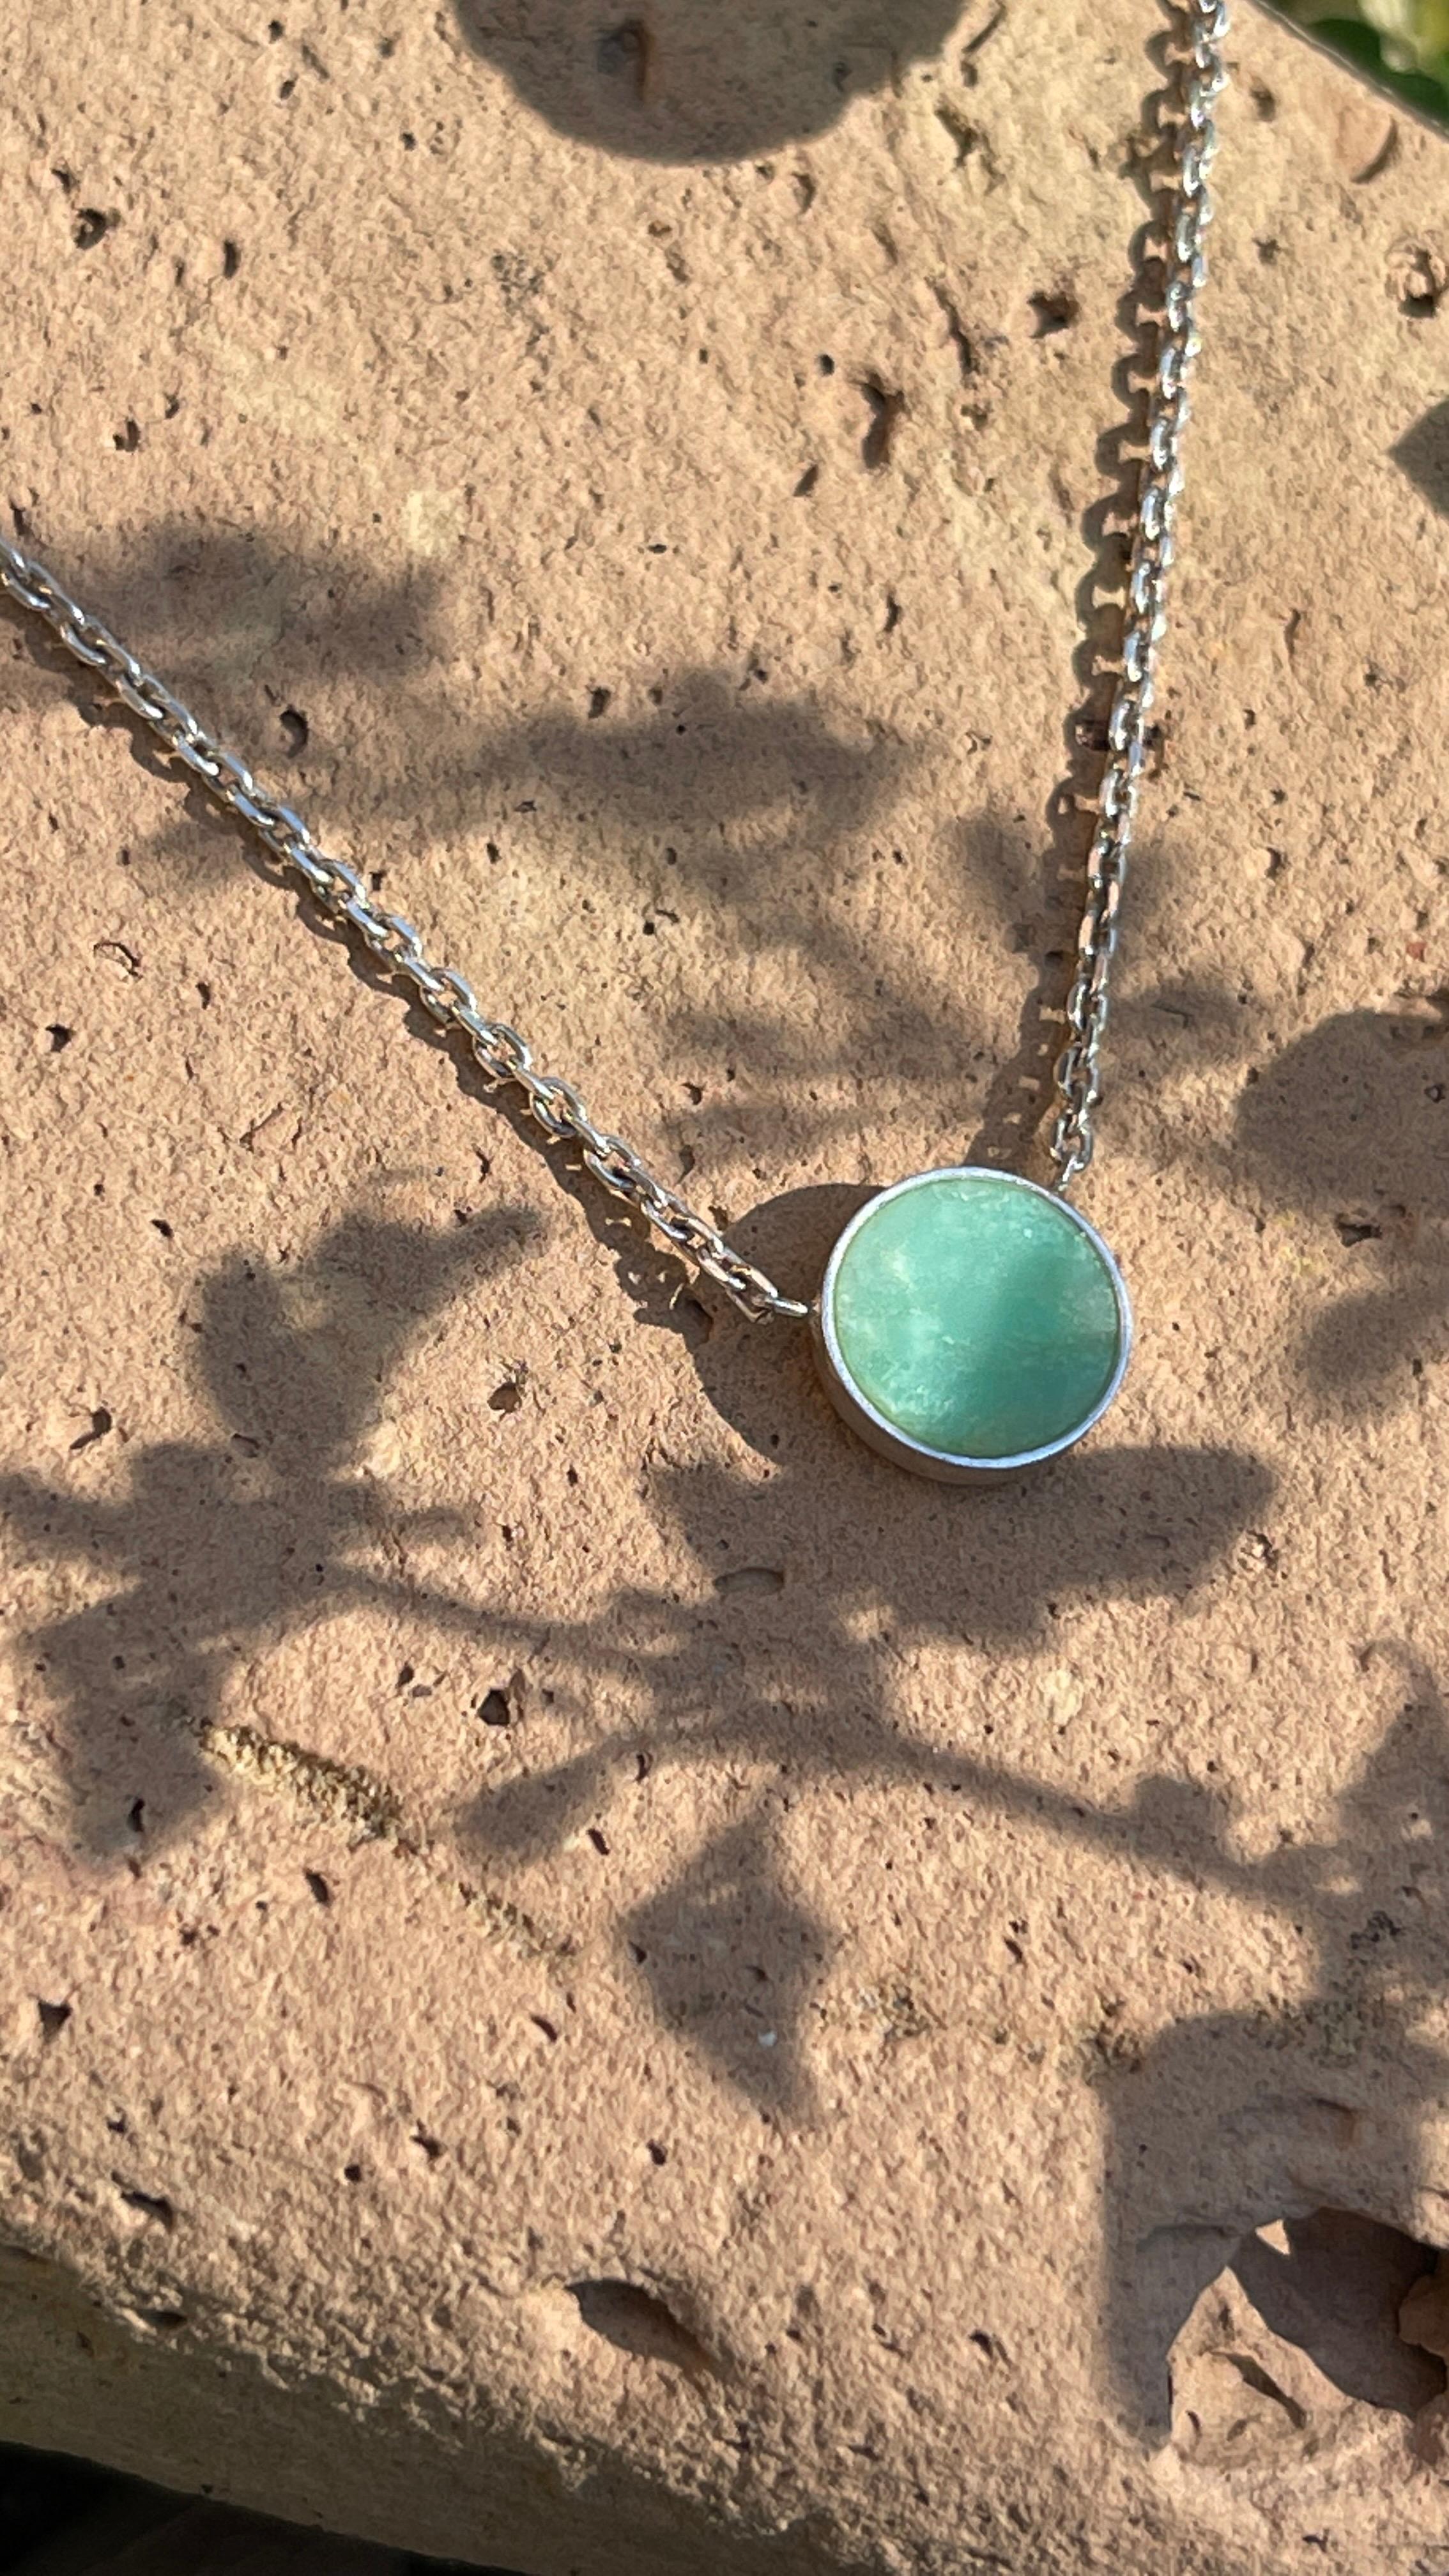 Notre collier en argent avec la pierre de couleur turquoise énergisante est fait pour vous si vous aimez les accessoires subtils mais accrocheurs. Portez-la pour ajouter une touche de couleur à toutes vos tenues. 
Le collier est orné de chrysoprase,